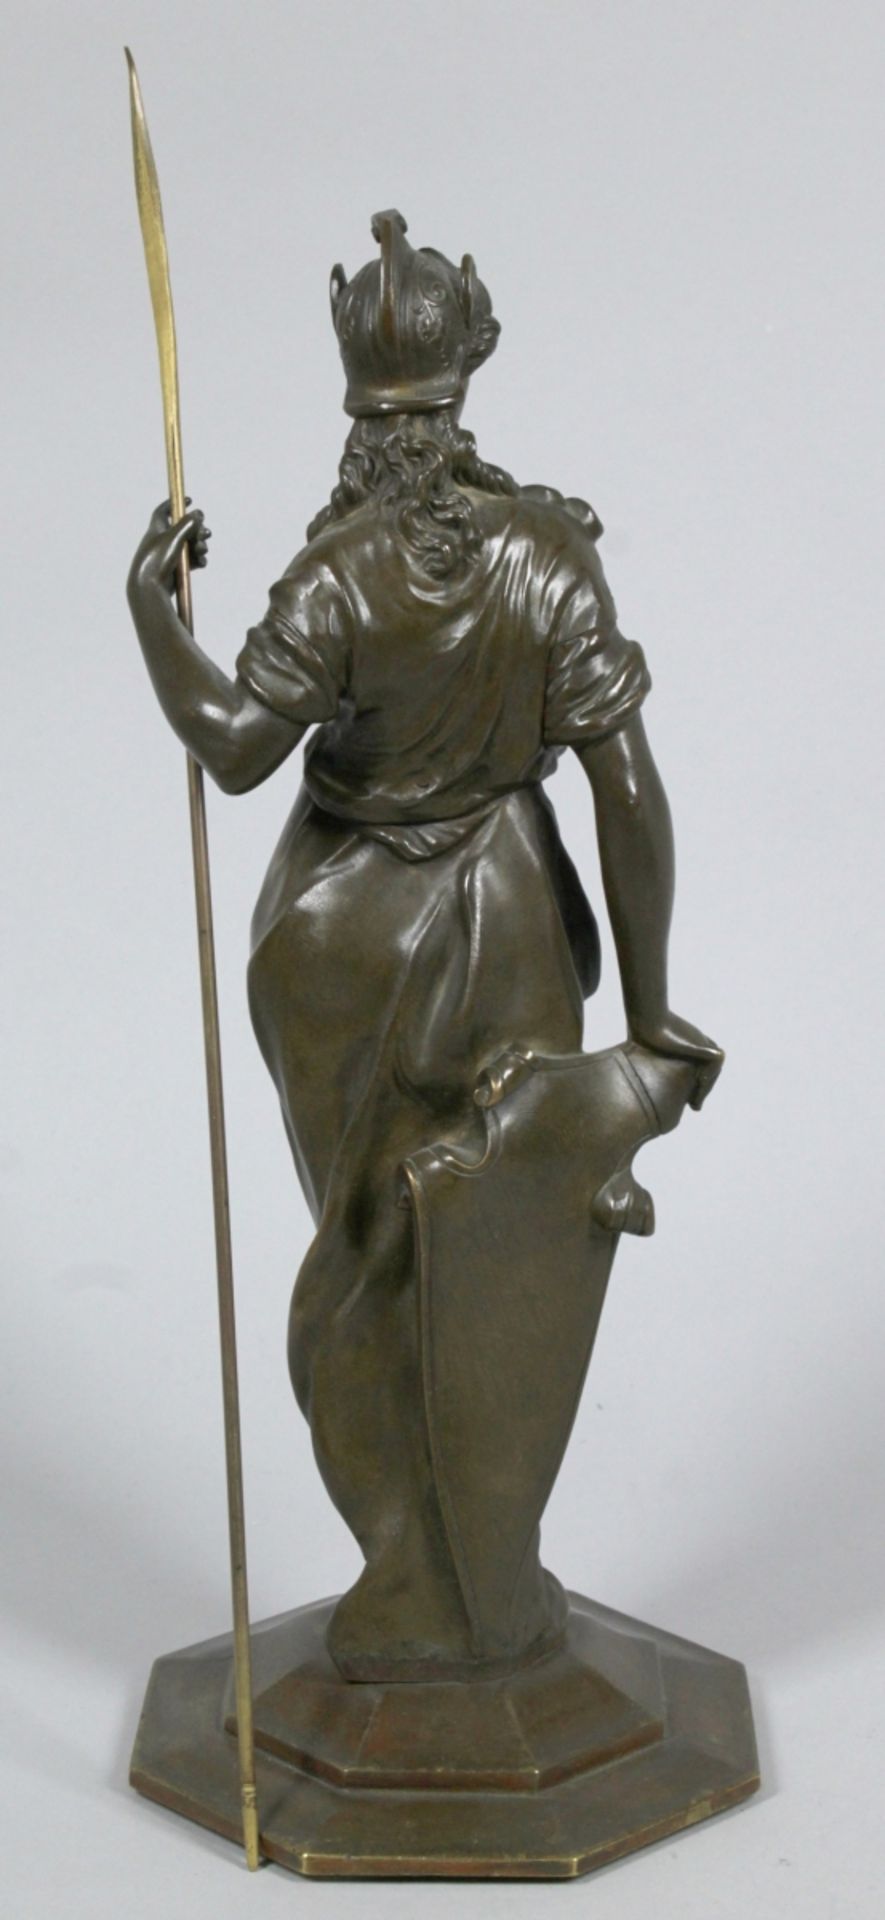 Bronze-Plastik, "Helena", anonymer Bildhauer, 2. Hälfte 19. Jh., vollplastische, stehendeDarste - Bild 2 aus 3